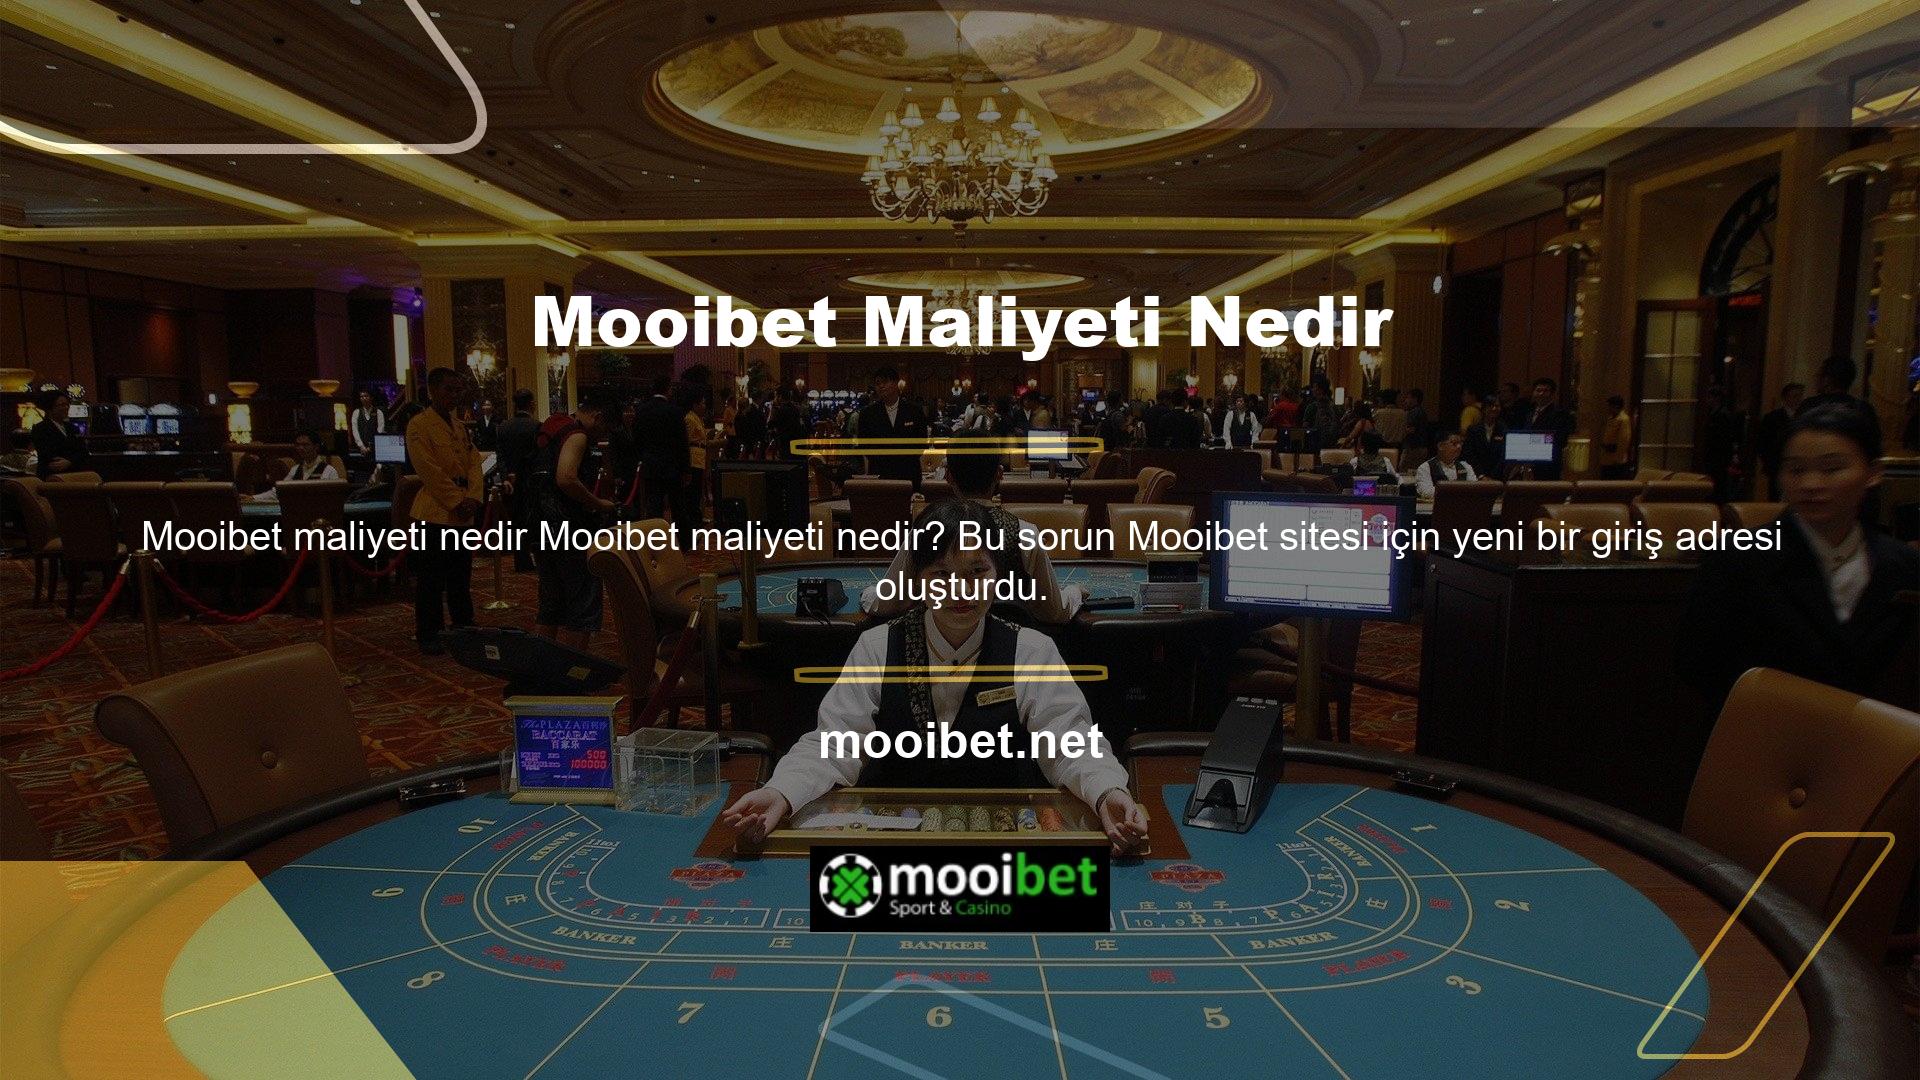 Bildiğiniz üzere Mooibet markası Türkiye'de halen yabancı bir oyun sitesi olmaya devam etmektedir